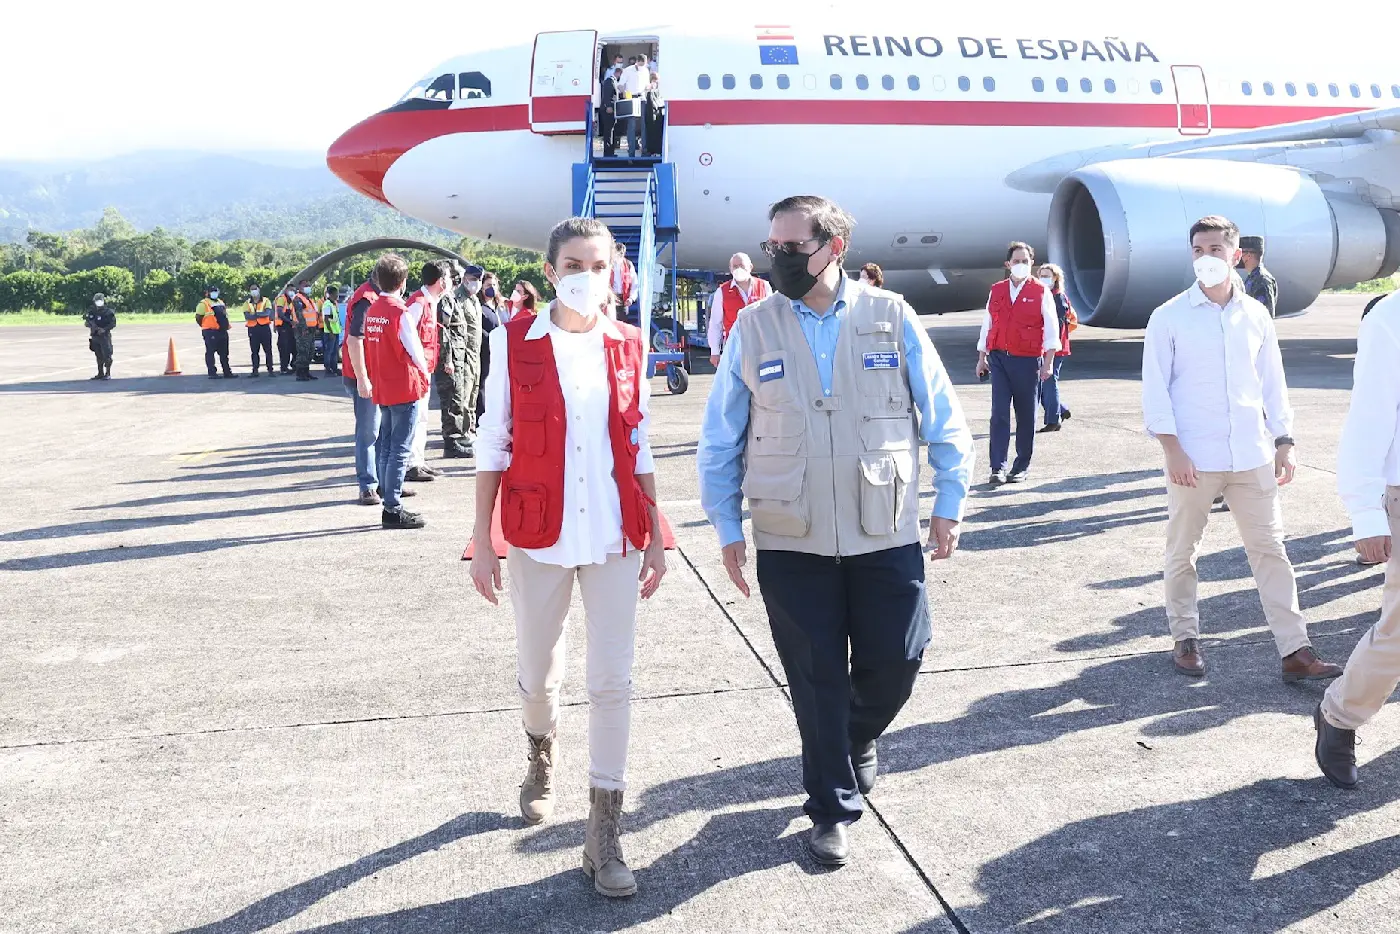 Queen Letizia of Spain visited Honduras